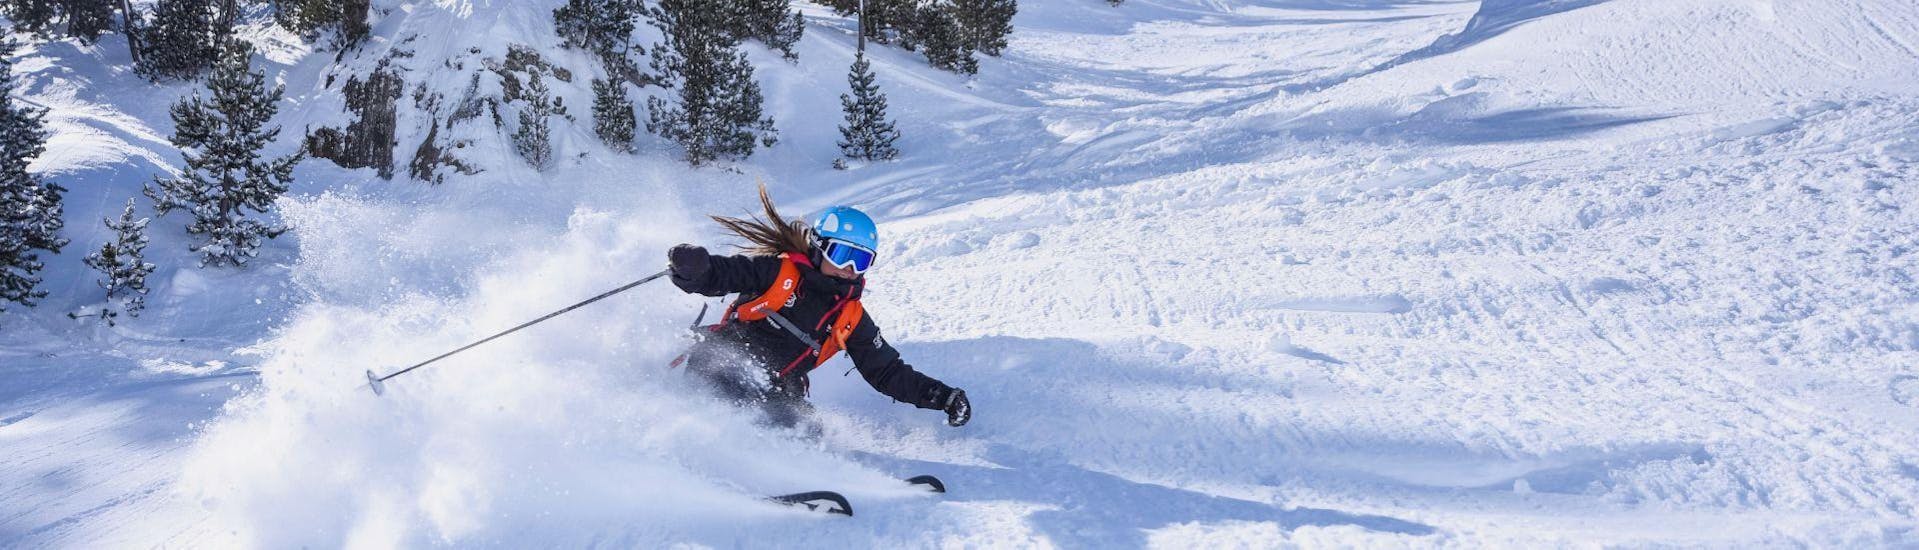 Eine Skilehrerin der Escuela Ski Cerler fährt elegant und sportlich die Piste bergab während dem Privaten Skikurs für Erwachsene für alle Levels.